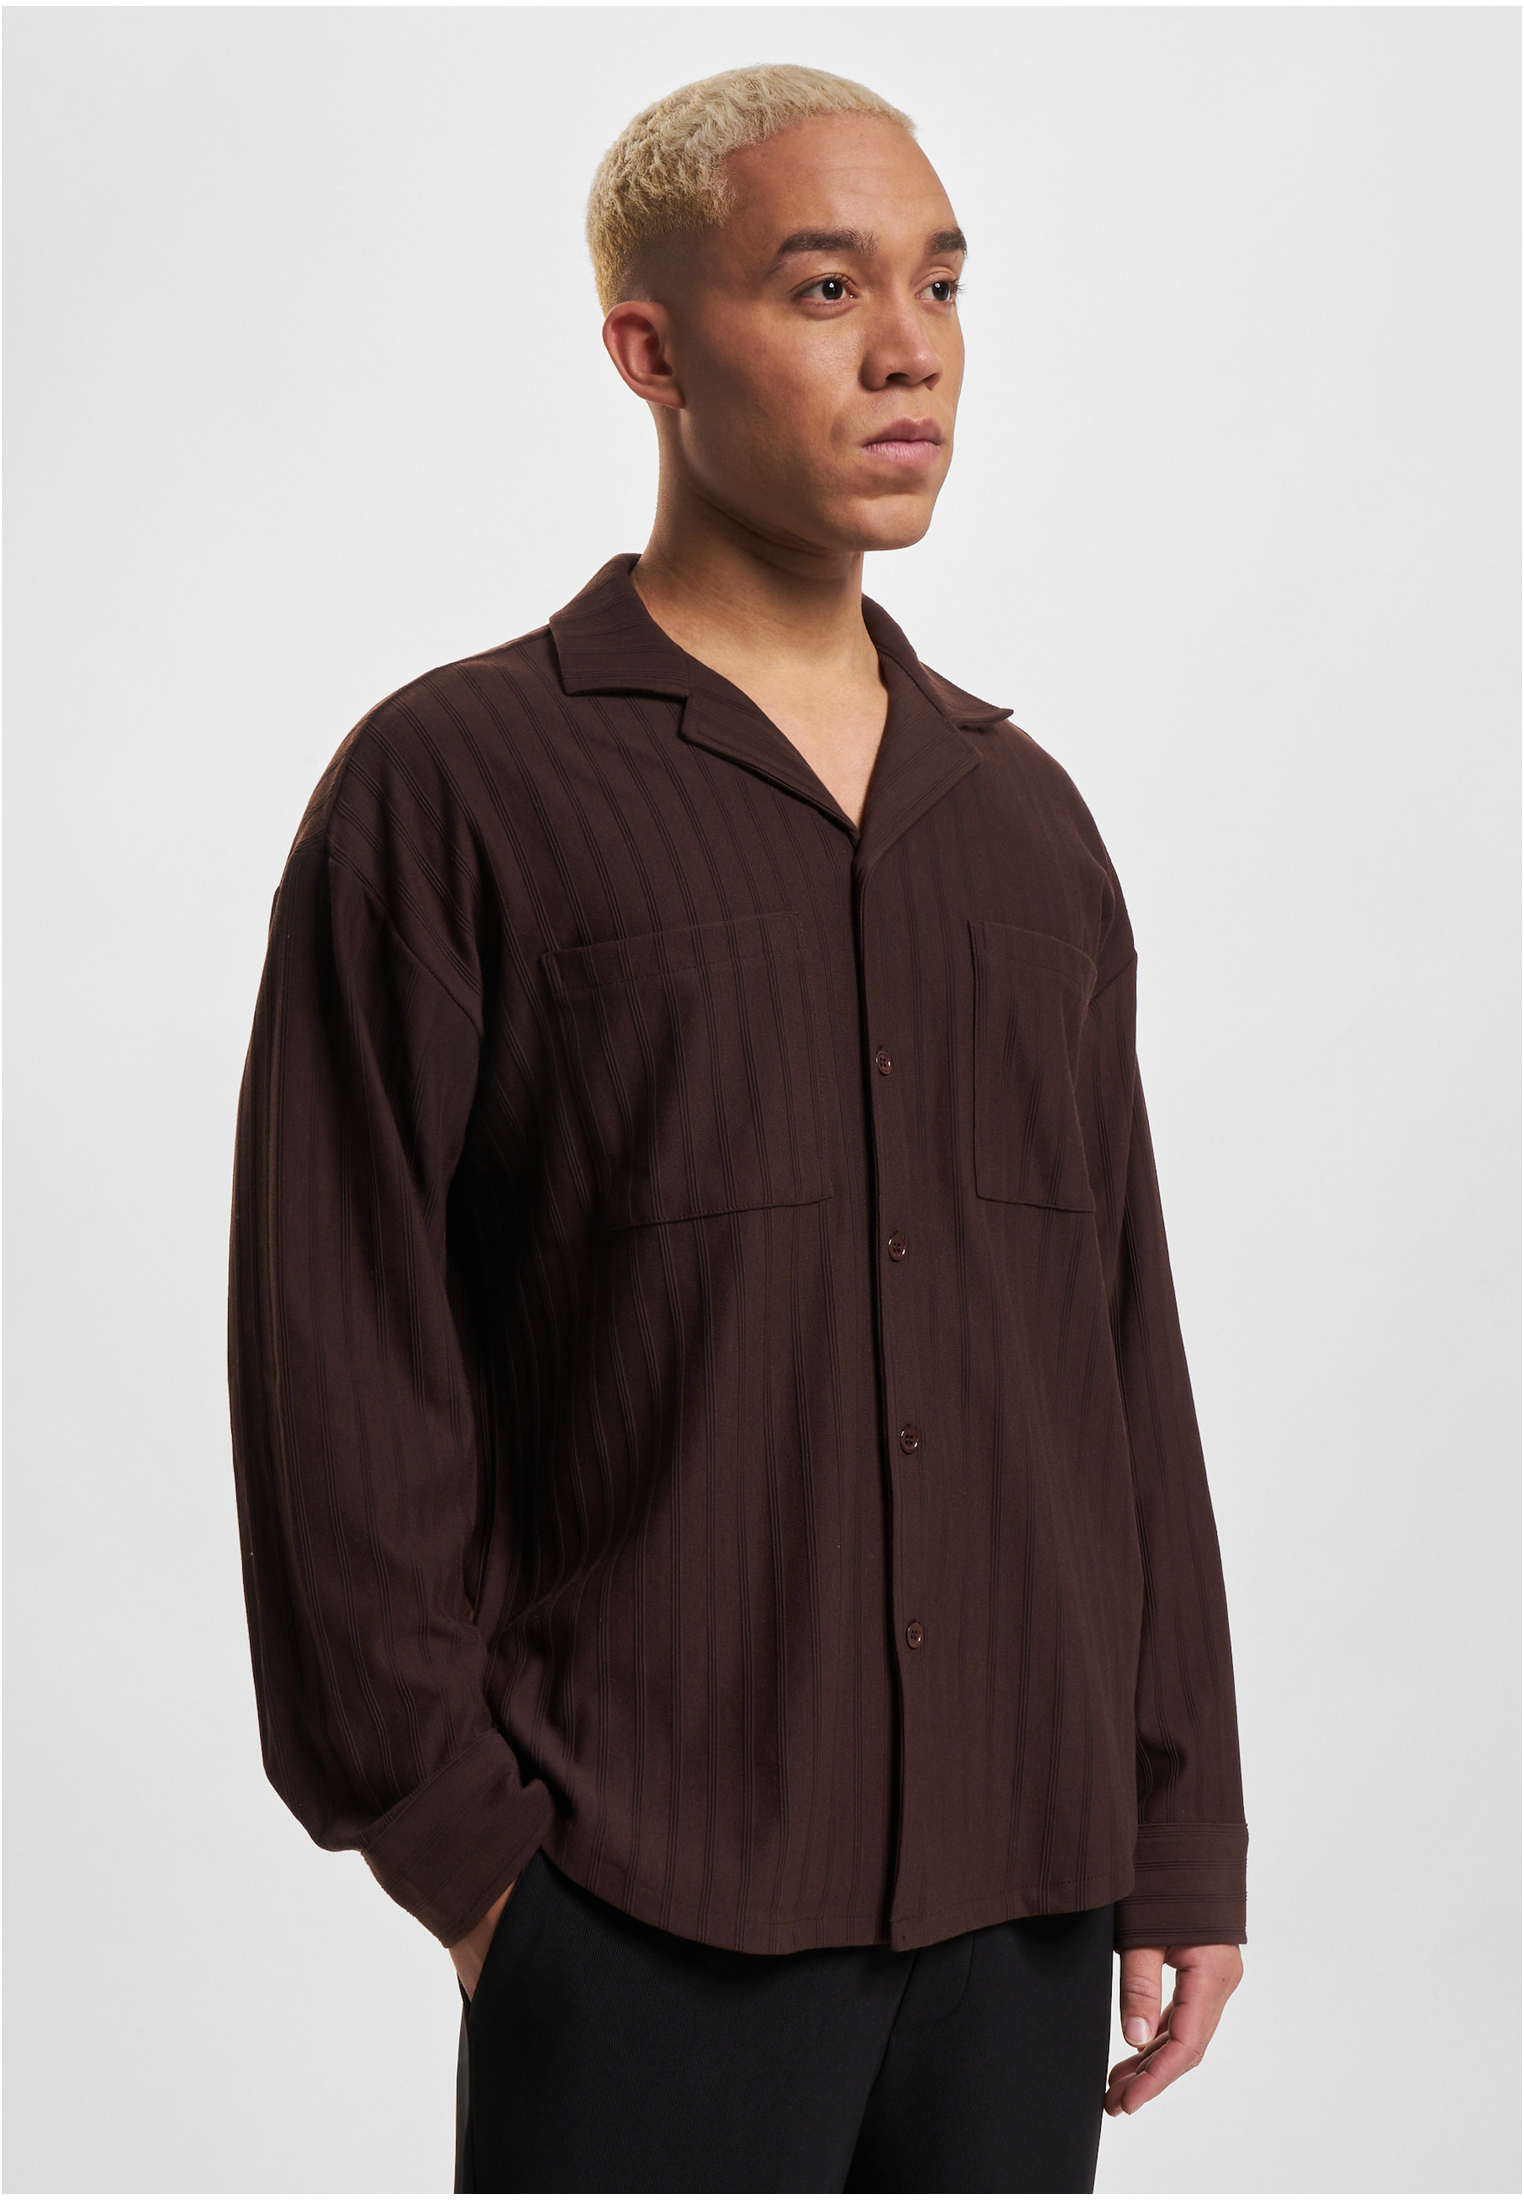 Men's shirt Cali dark brown